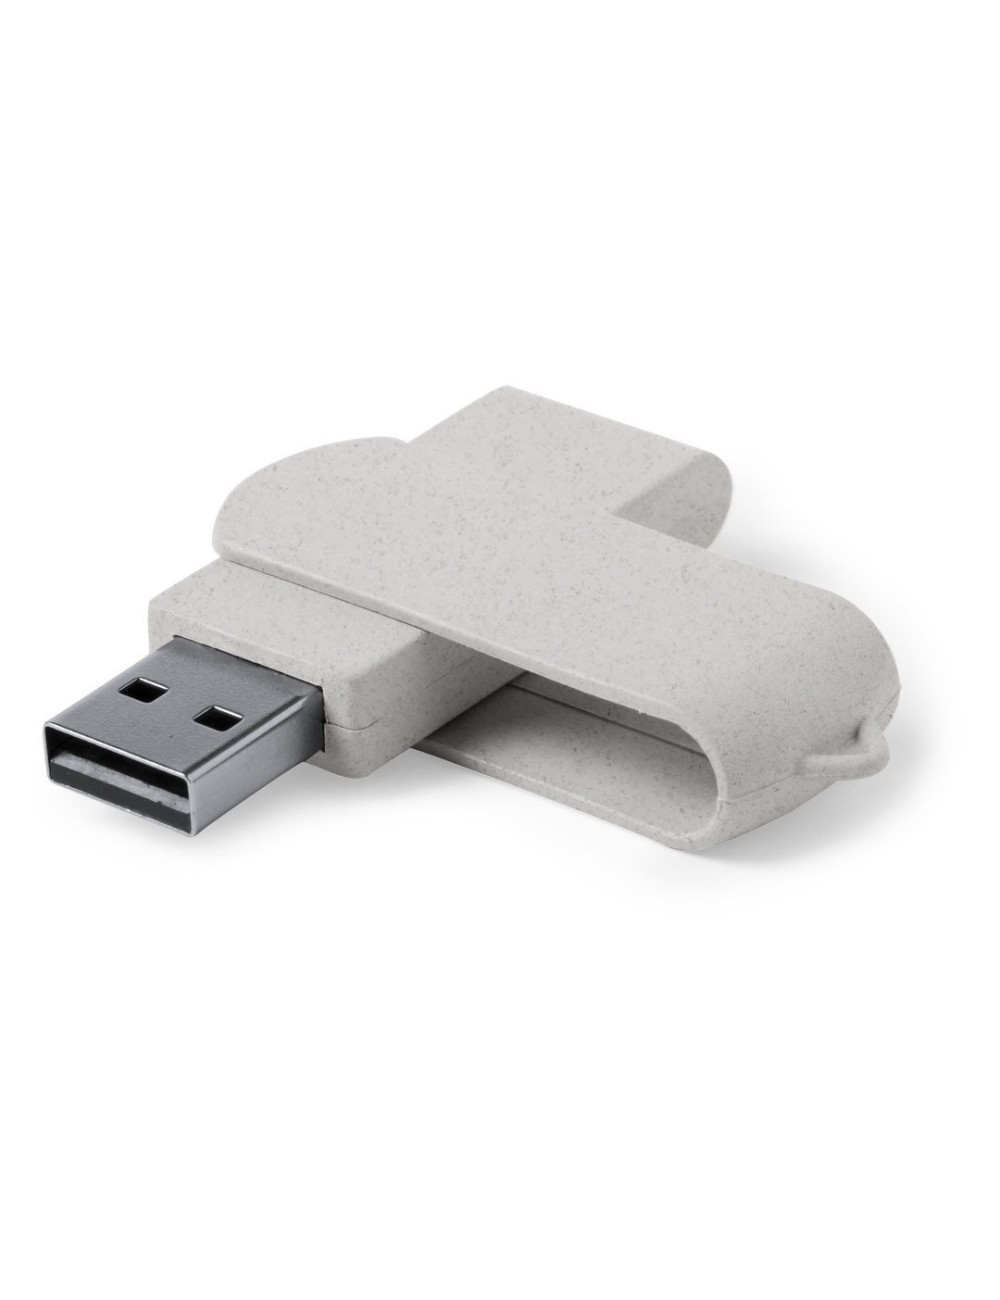 Memória USB Kontix 16GB